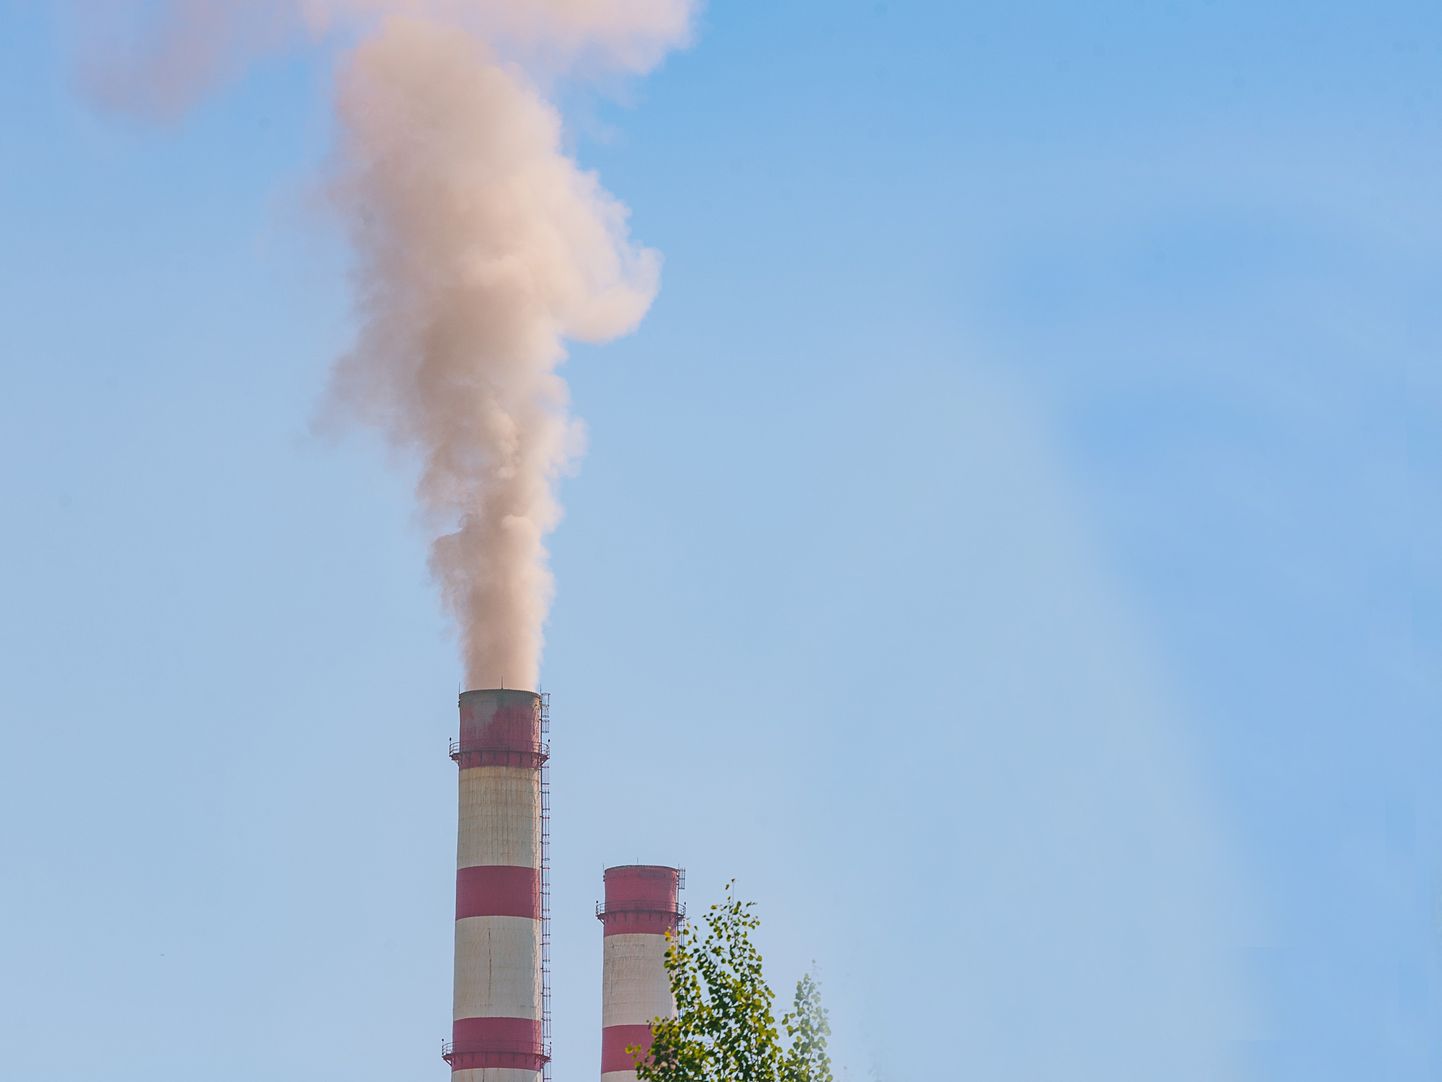 Нарвские электростанции выбросили в этом году в воздух на несколько миллионов тонн меньше двуокиси углерода, чем в прошлом году.